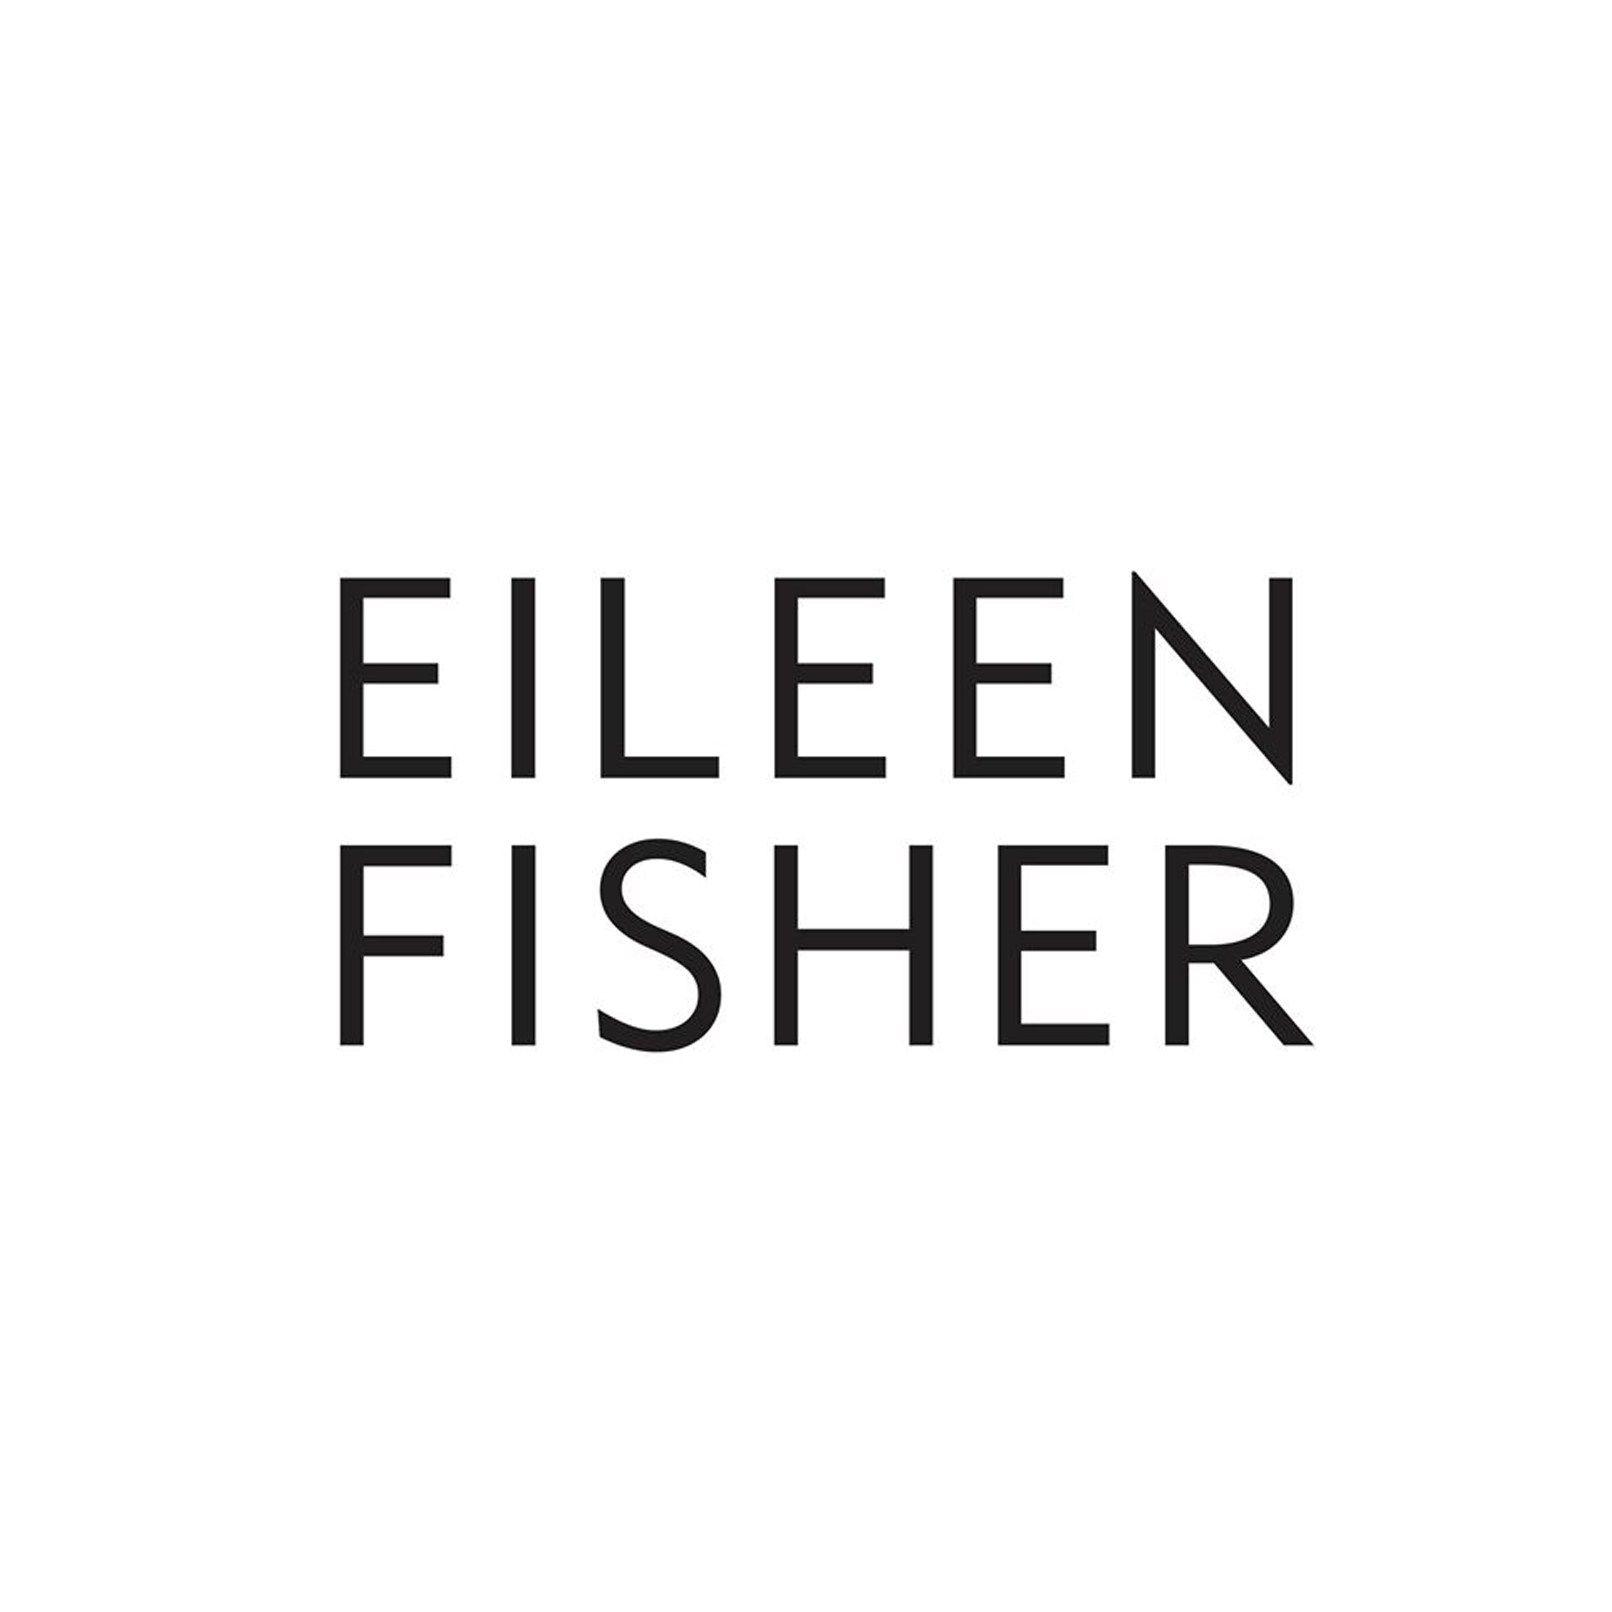 Fisher Logo - EILEEN FISHER Logo - Verité